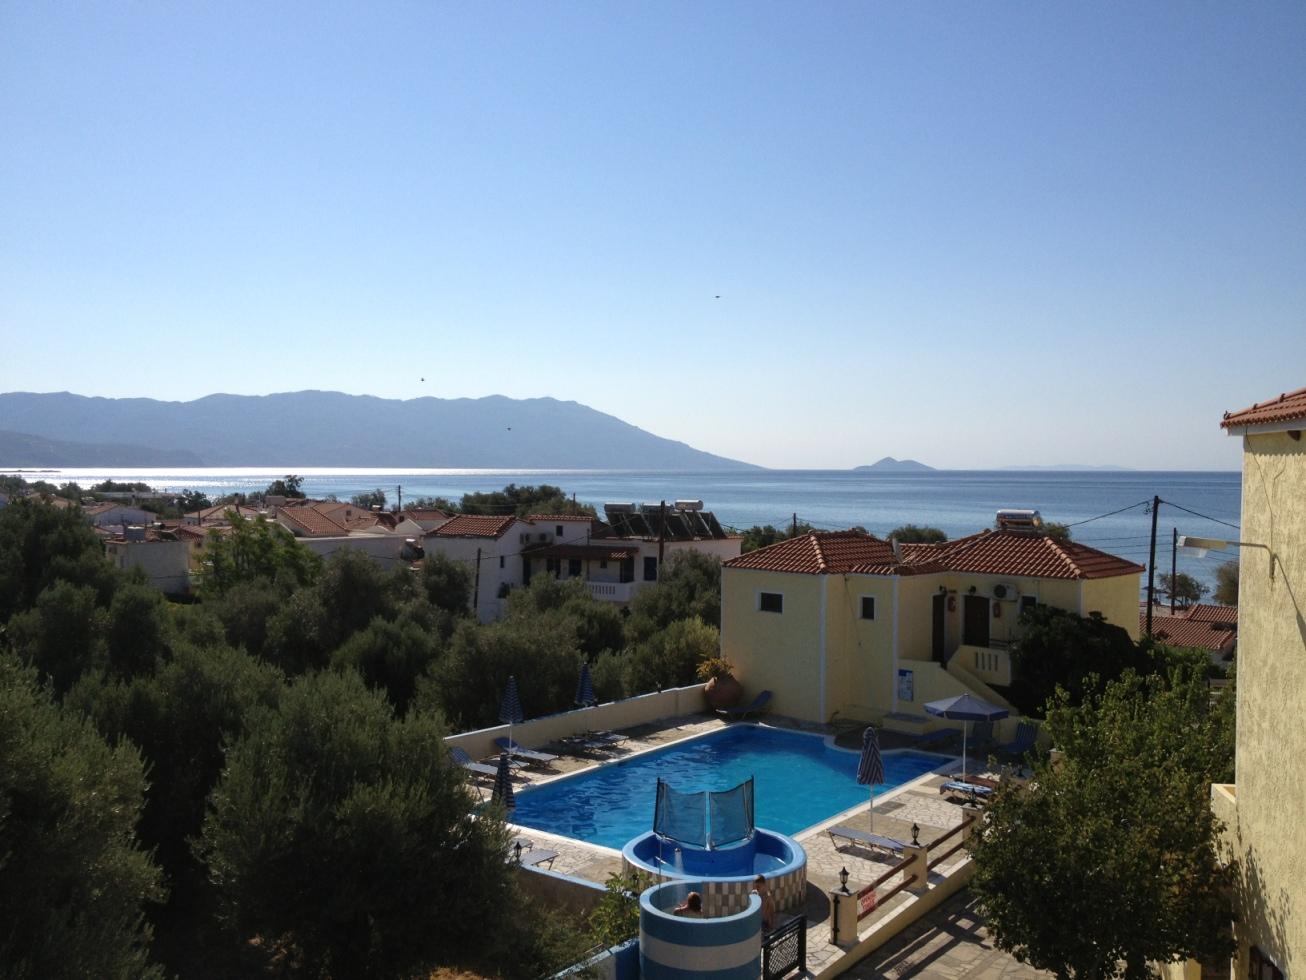 Utsikt ifrån vår balkong, Grekland (Samos)